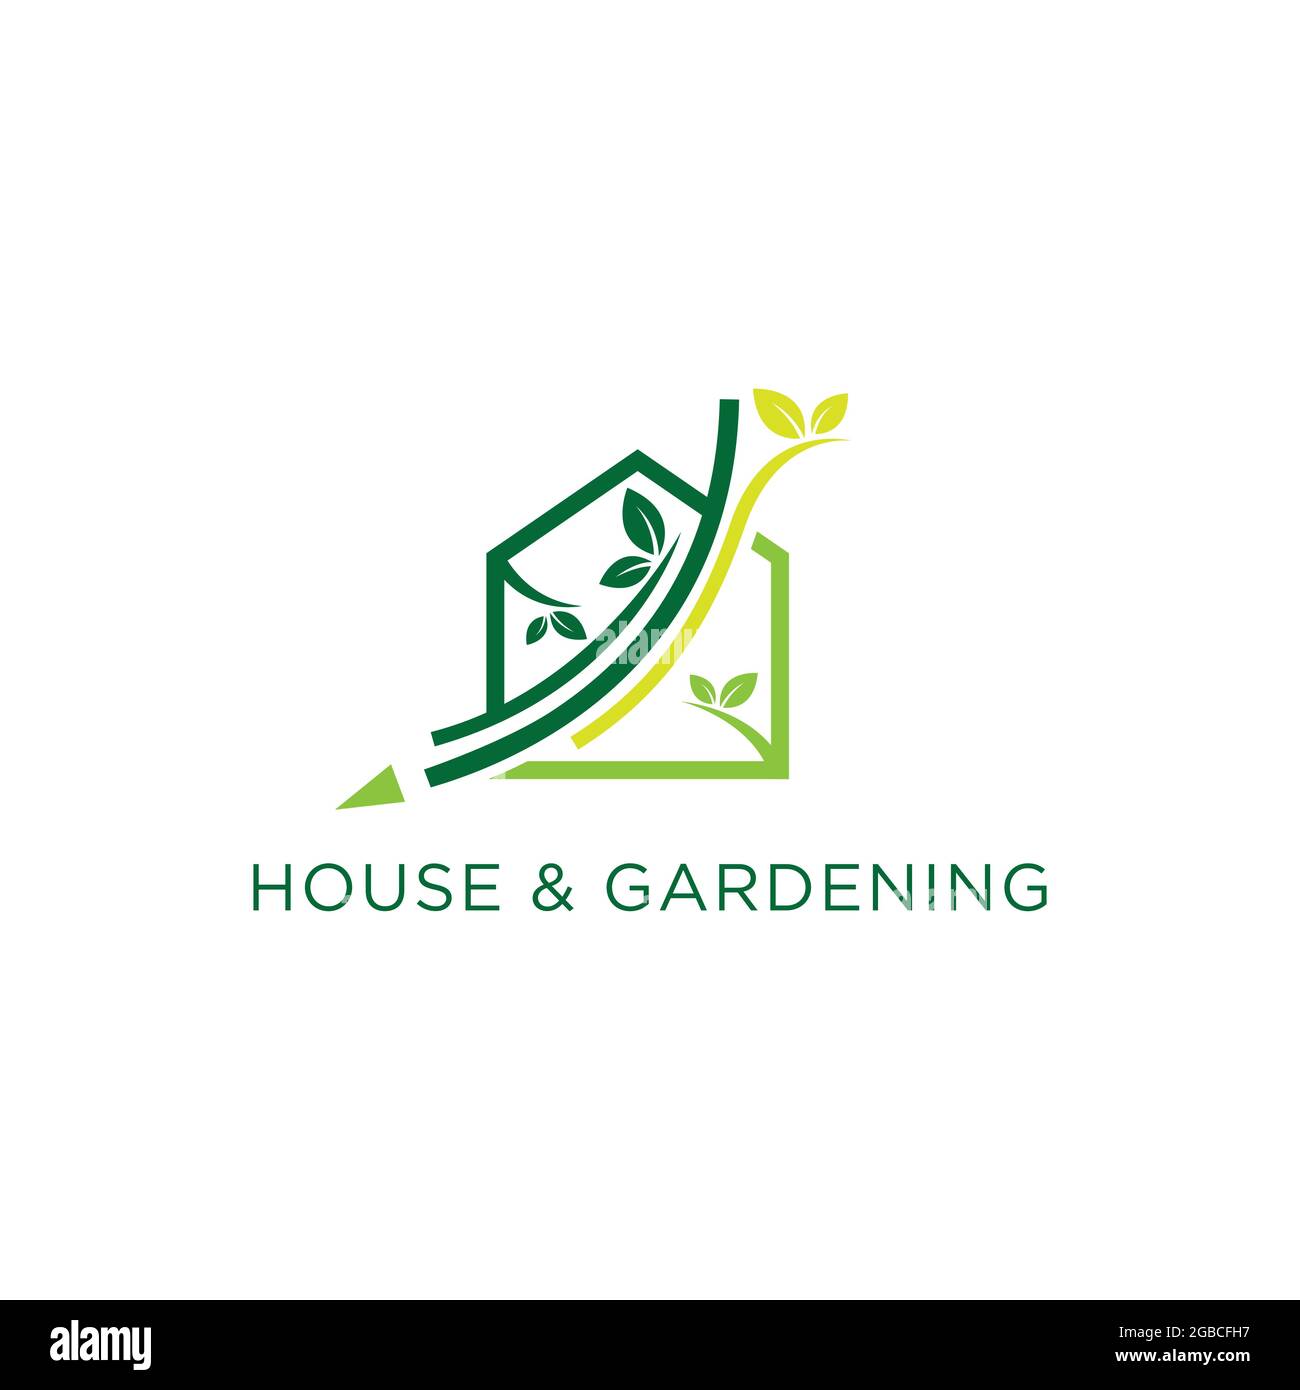 Haus und Gartenbau Landschaftsbau Logo Design Vektor Konzept. Home Gartenarbeit Logo Vektor Bild. Grüne Home Landschaft Logo Vorlage Stock Vektor